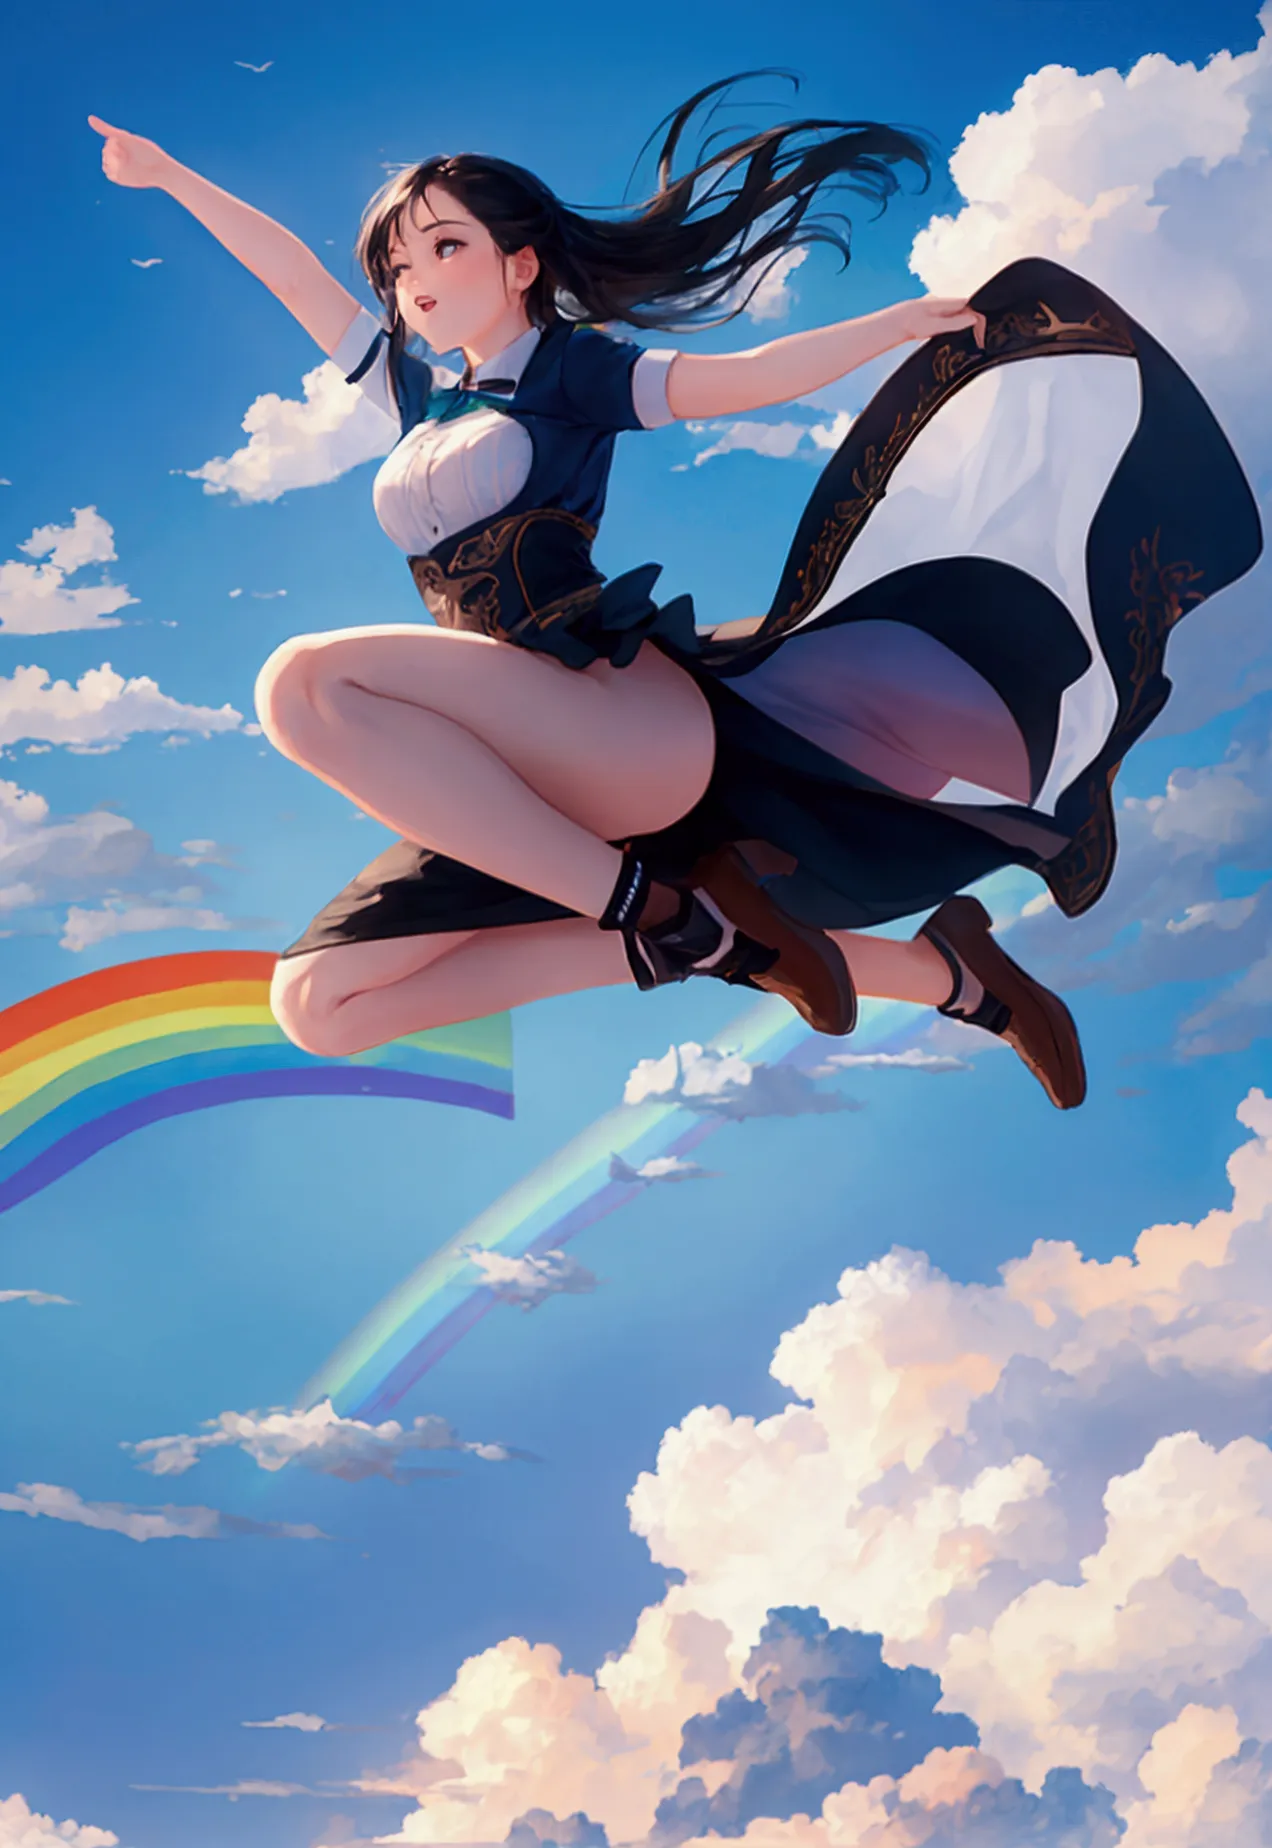 A woman jumping towards a rainbow sky